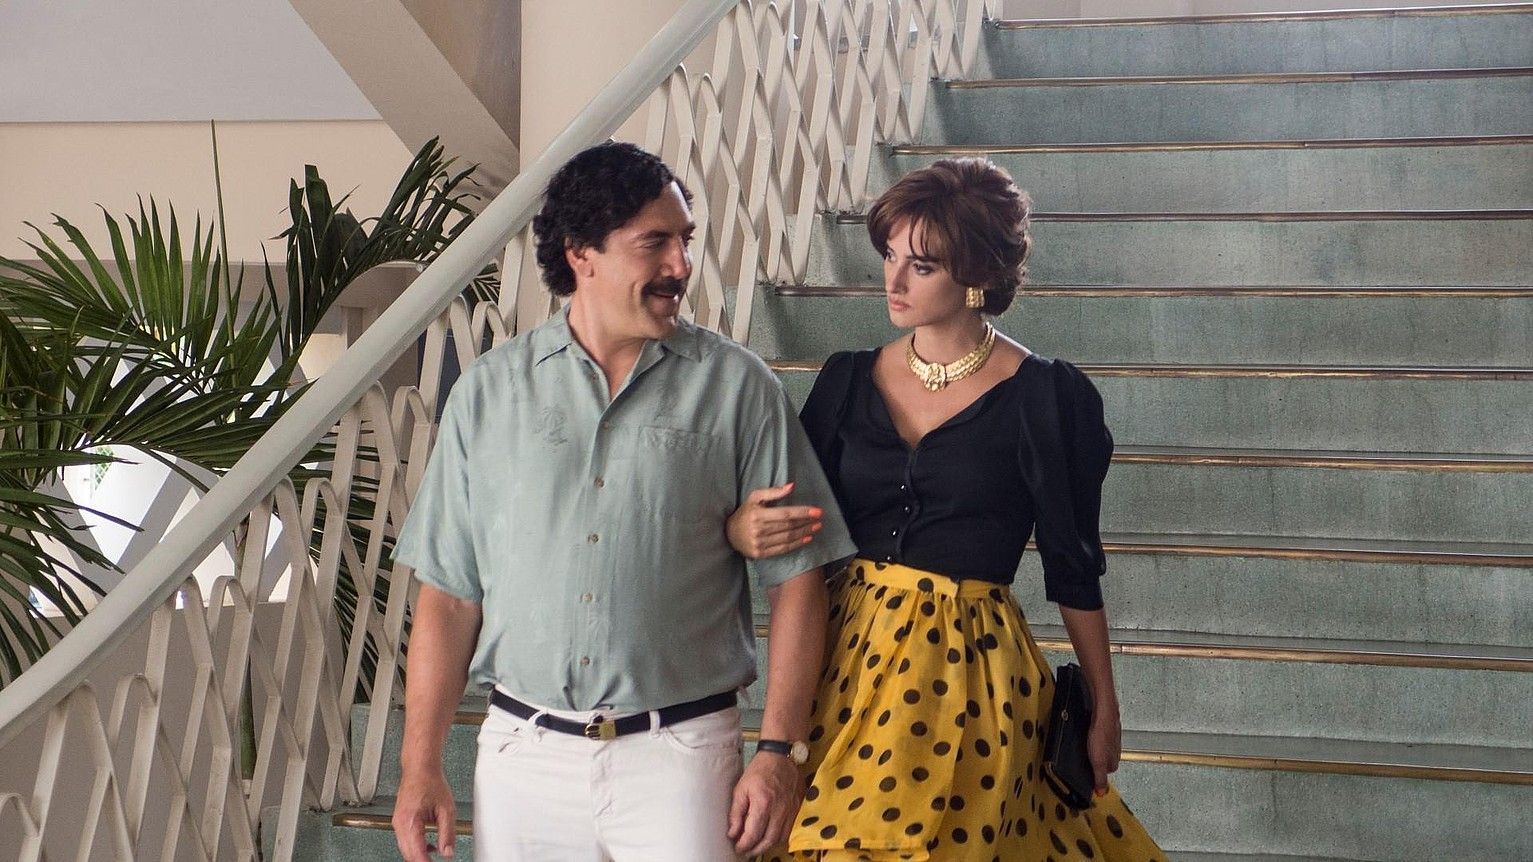 Javier Bardem eta Penelope Cruz filmeko eszena batean. 1980ko hamarkadako maitasun istorio bat kontatzen du filmak. BERRIA.